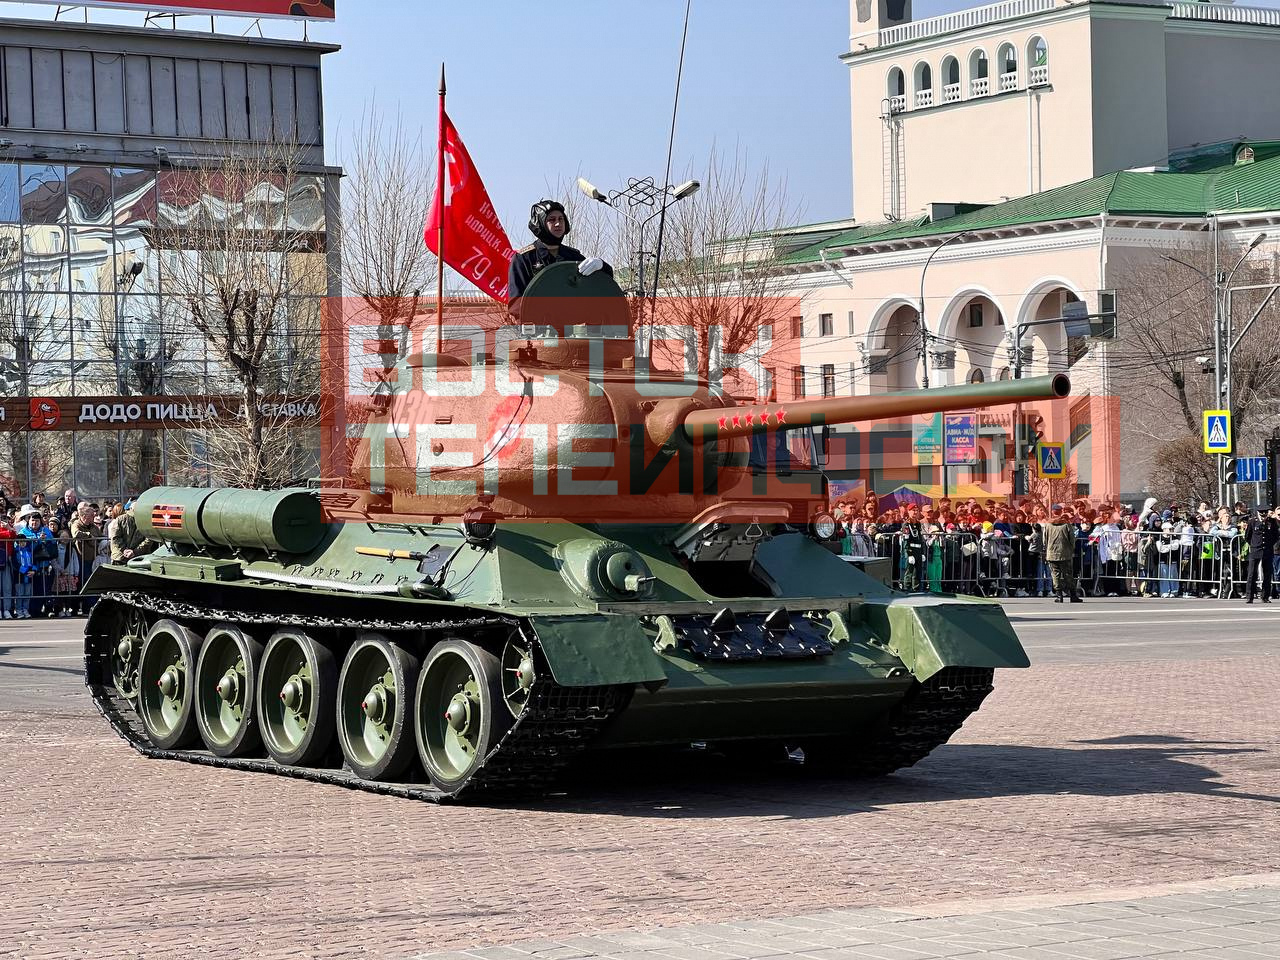 Парад Победы проходит сегодня в Улан-Удэ 